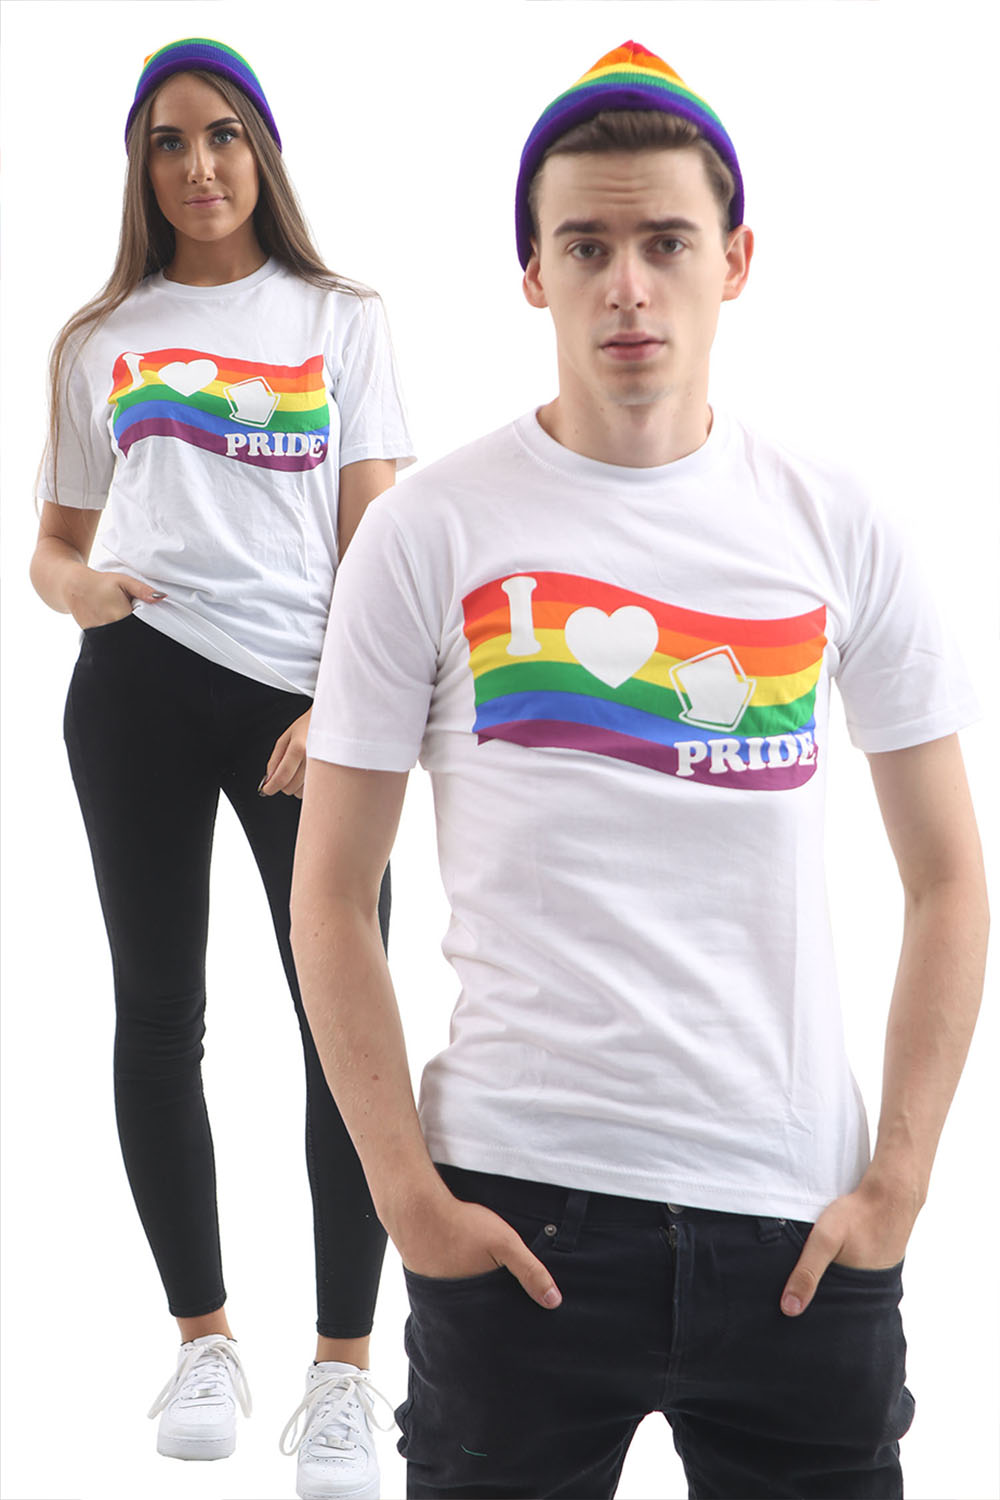 Wickedfun Rainbow Printed White T-Shirt